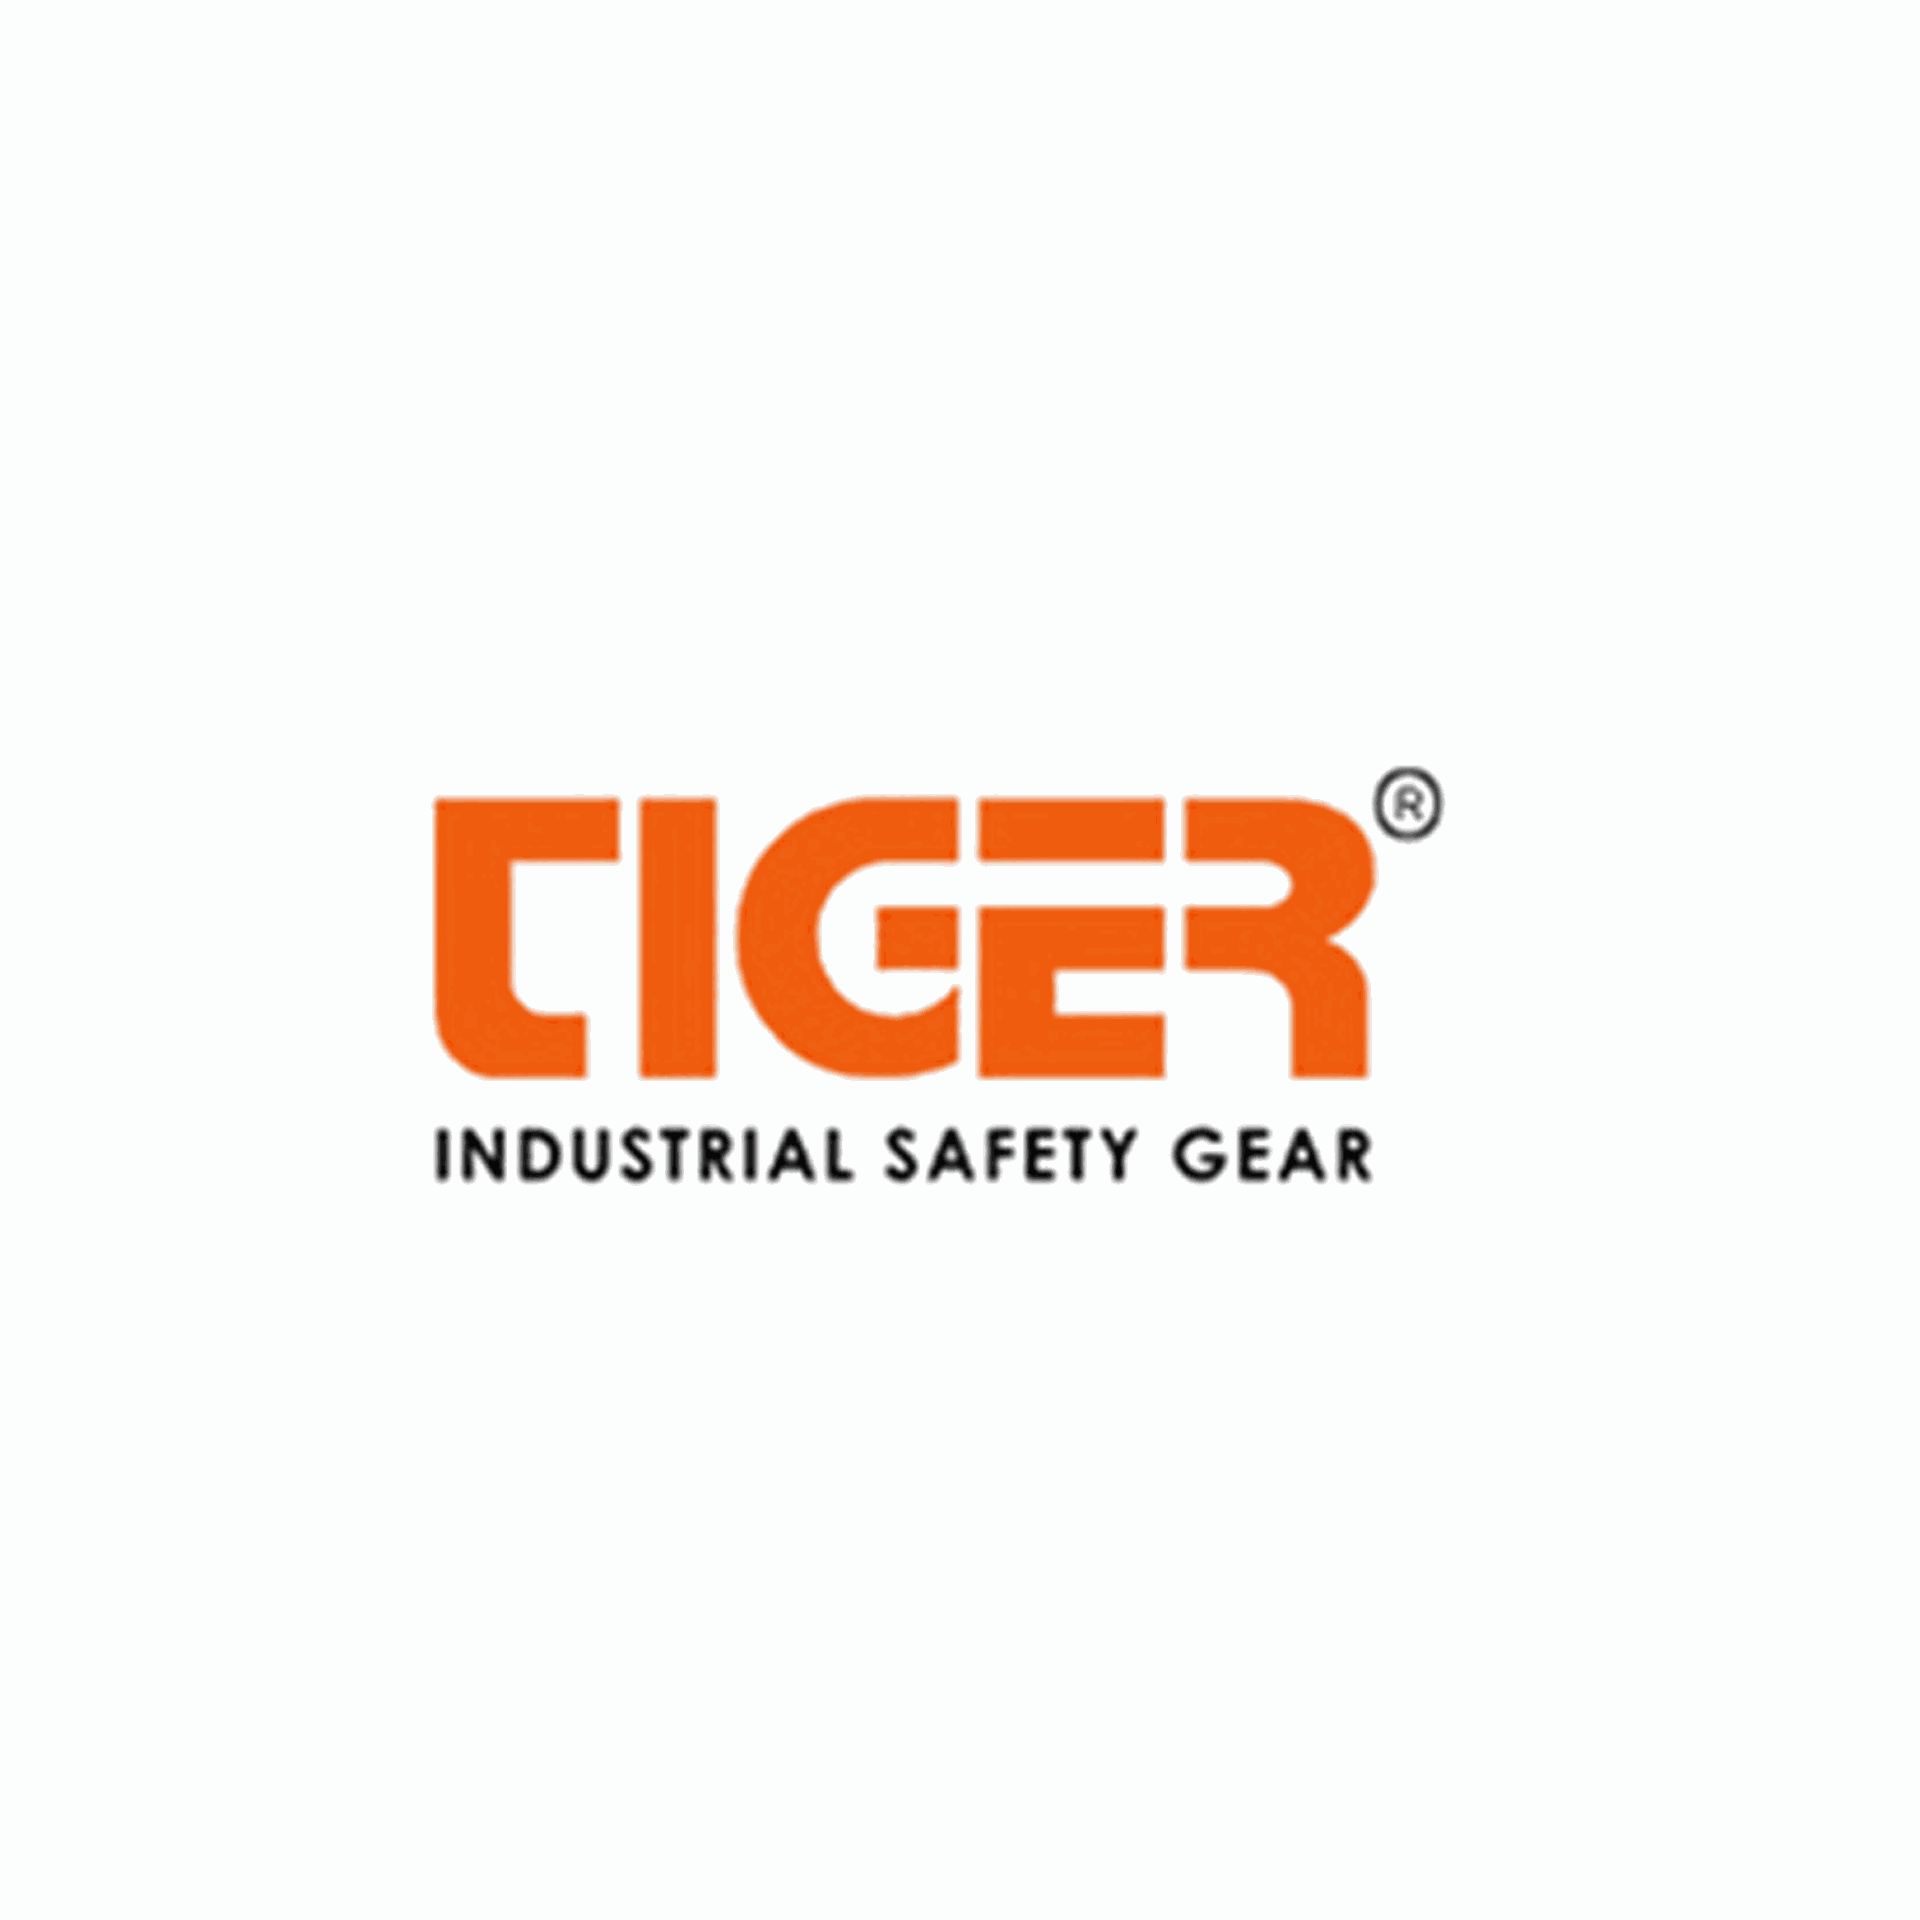 Brand: Tiger